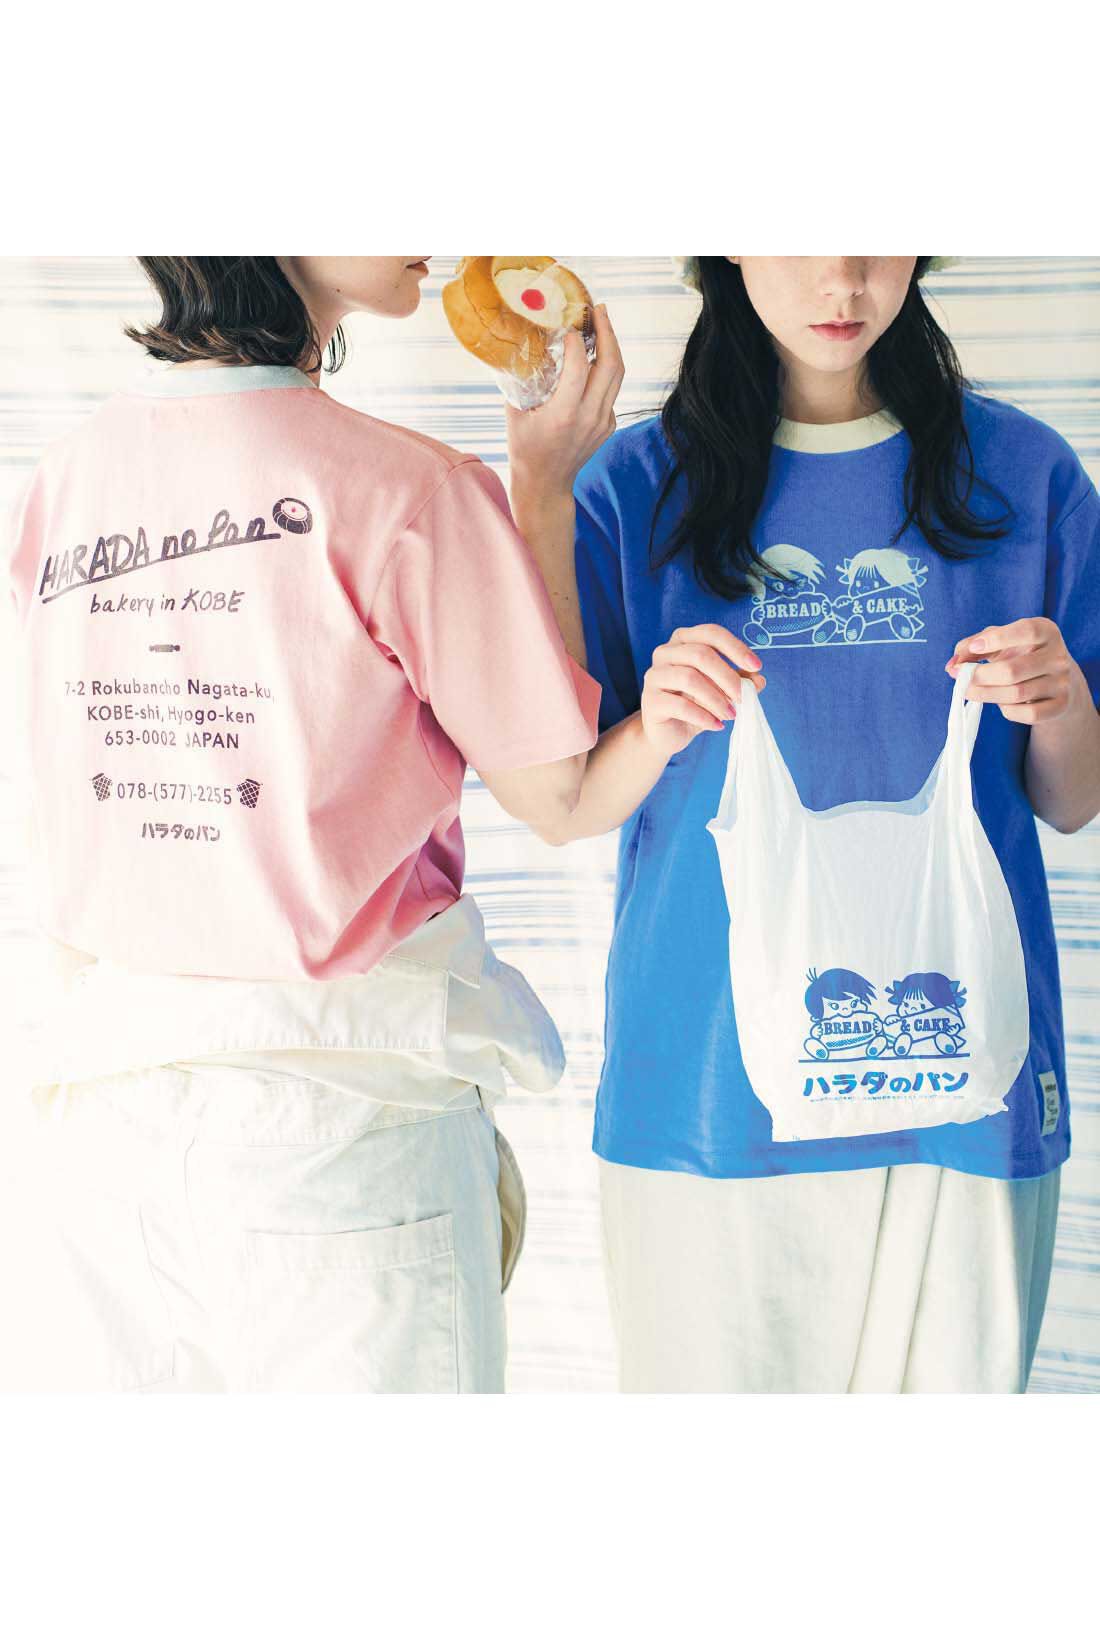 Real Stock|Live love cottonプロジェクト リブ イン コンフォート神戸のベーカリーハラダのパンさんとつくったオーガニックコットンのレトロかわいいTシャツ〈ジェイブルー〉